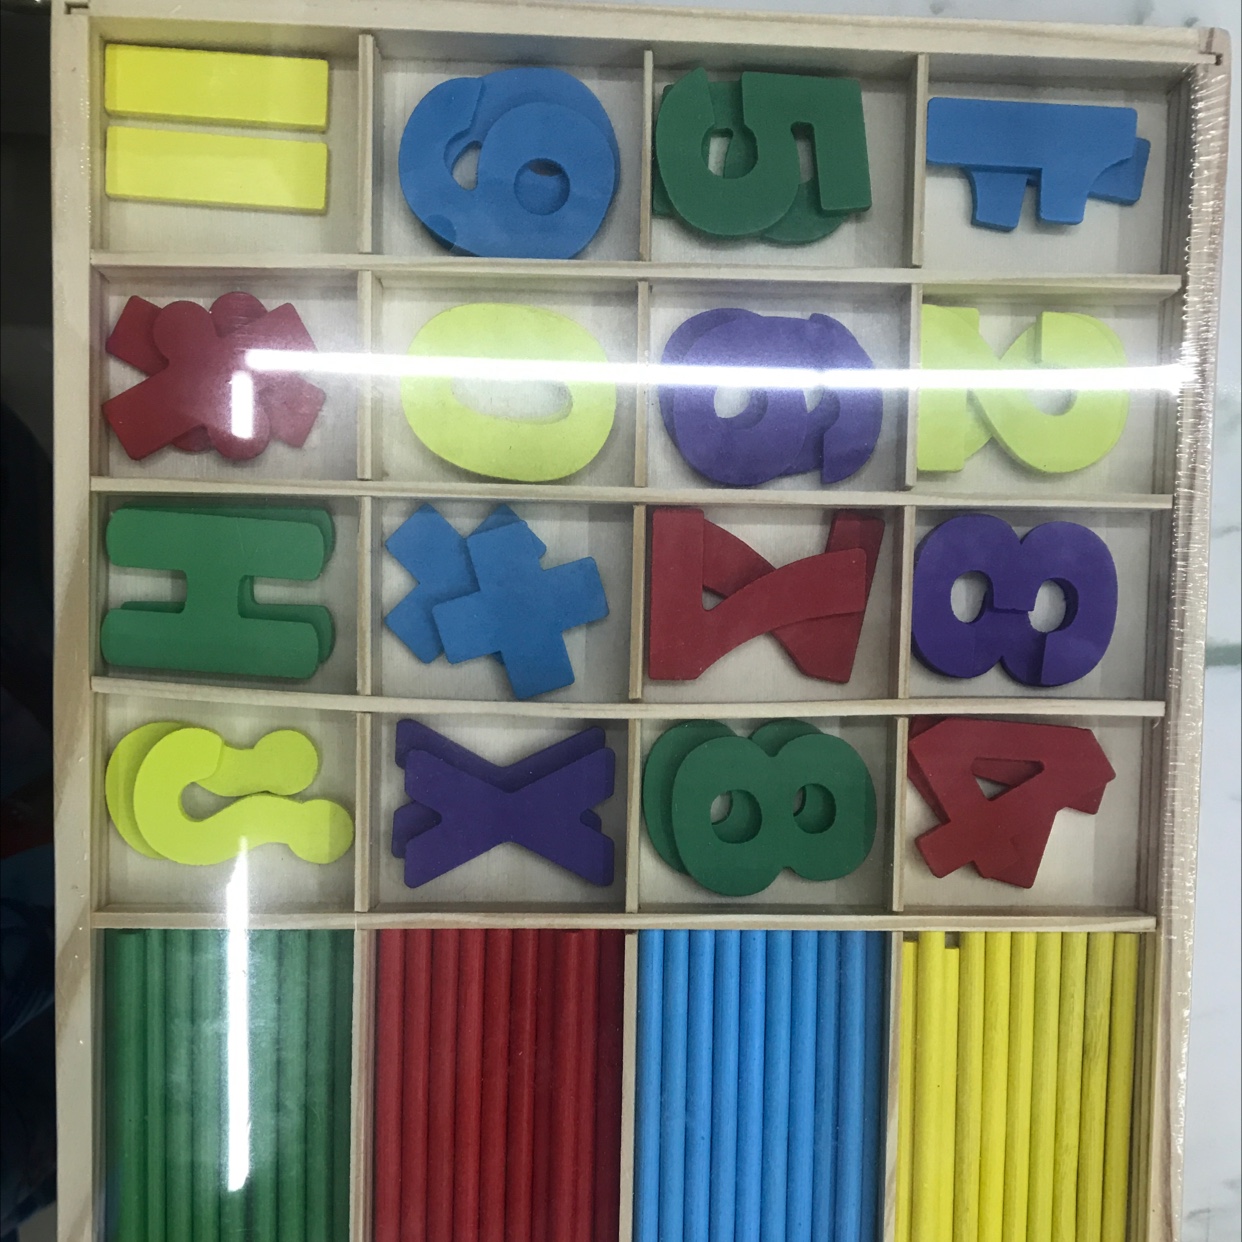 数字棒数字盒儿童益智玩具礼盒拼装玩具动脑早教